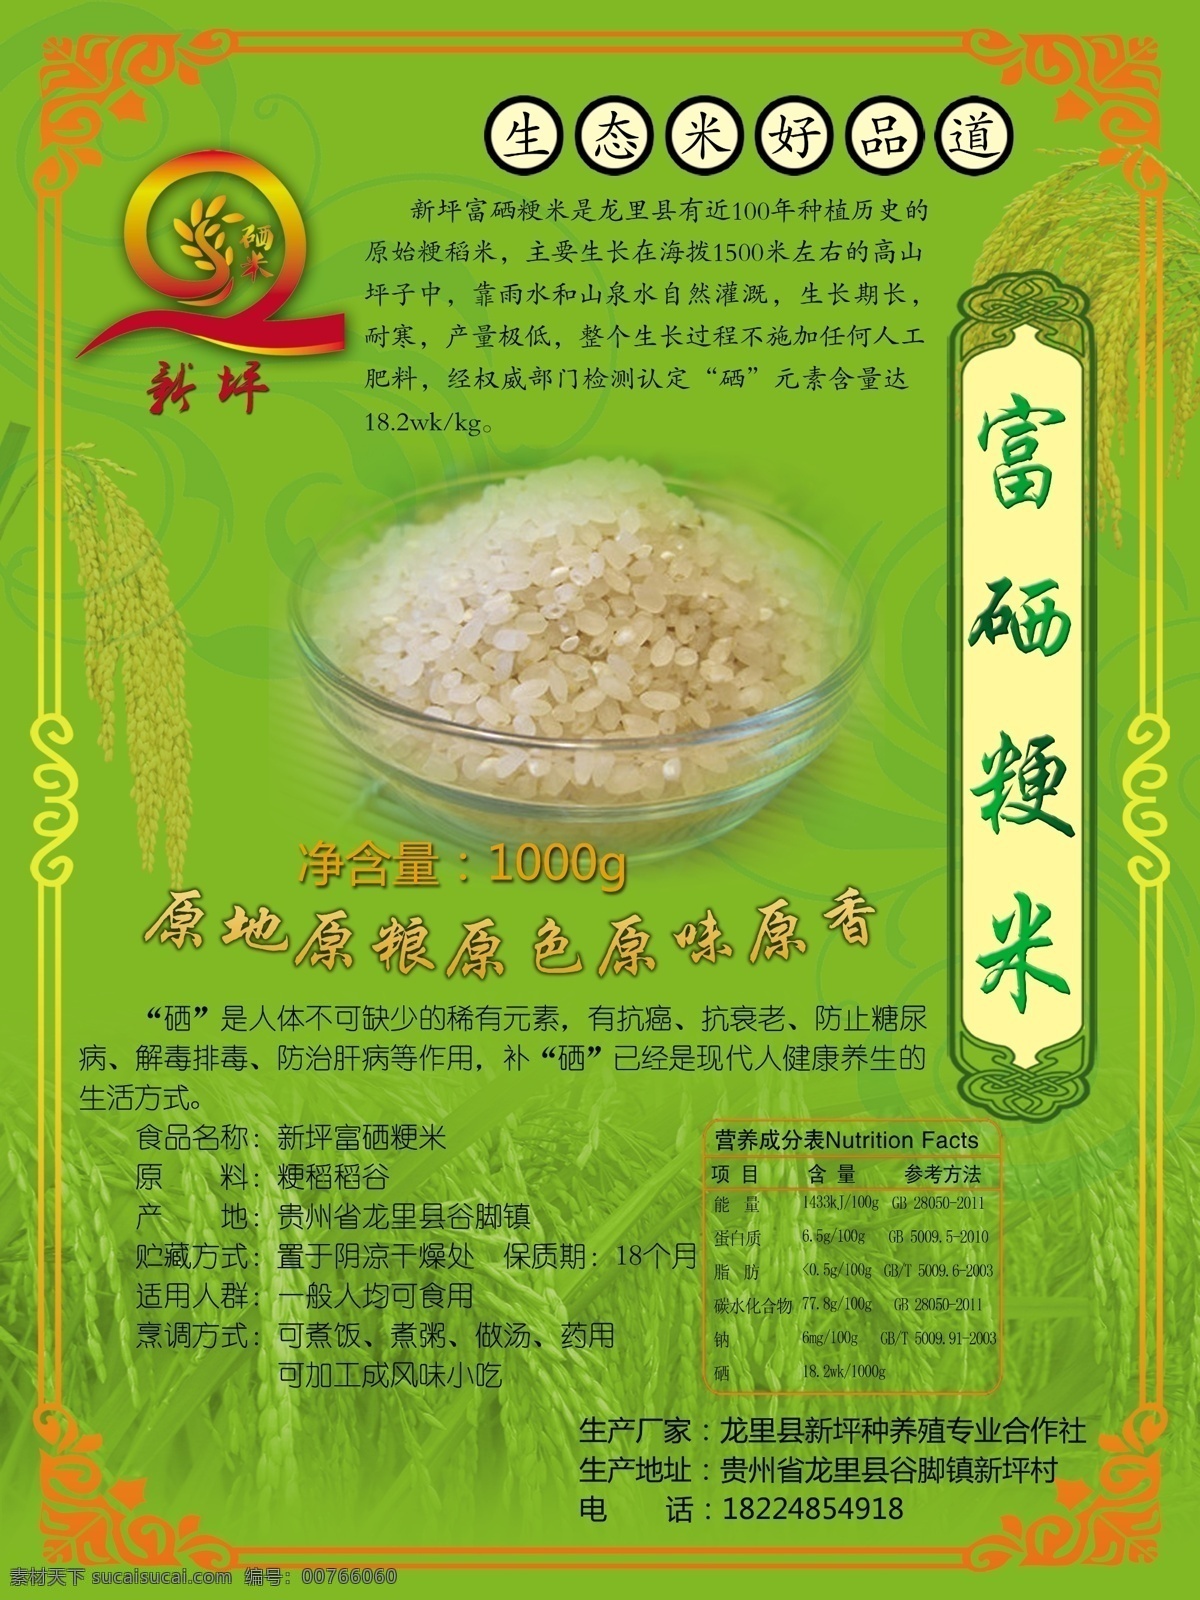 粳米包装 米包装 米海报 水稻海报 米广告 包装设计 绿色